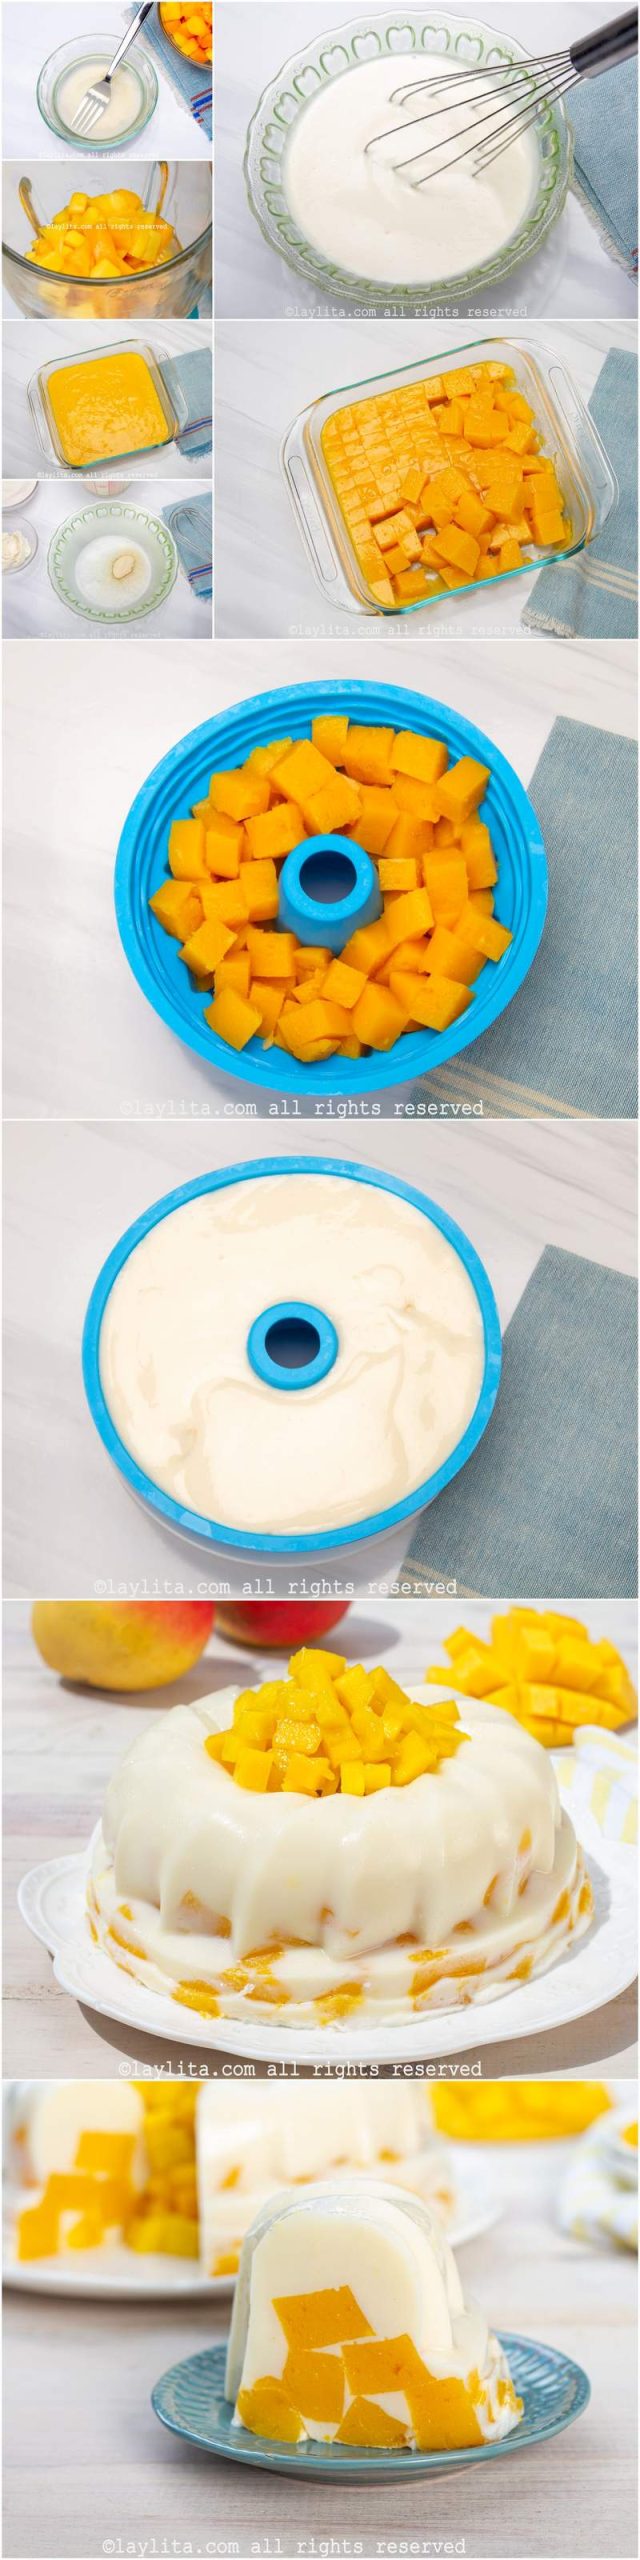 Preparación paso a paso de la gelatina mosaico de mango